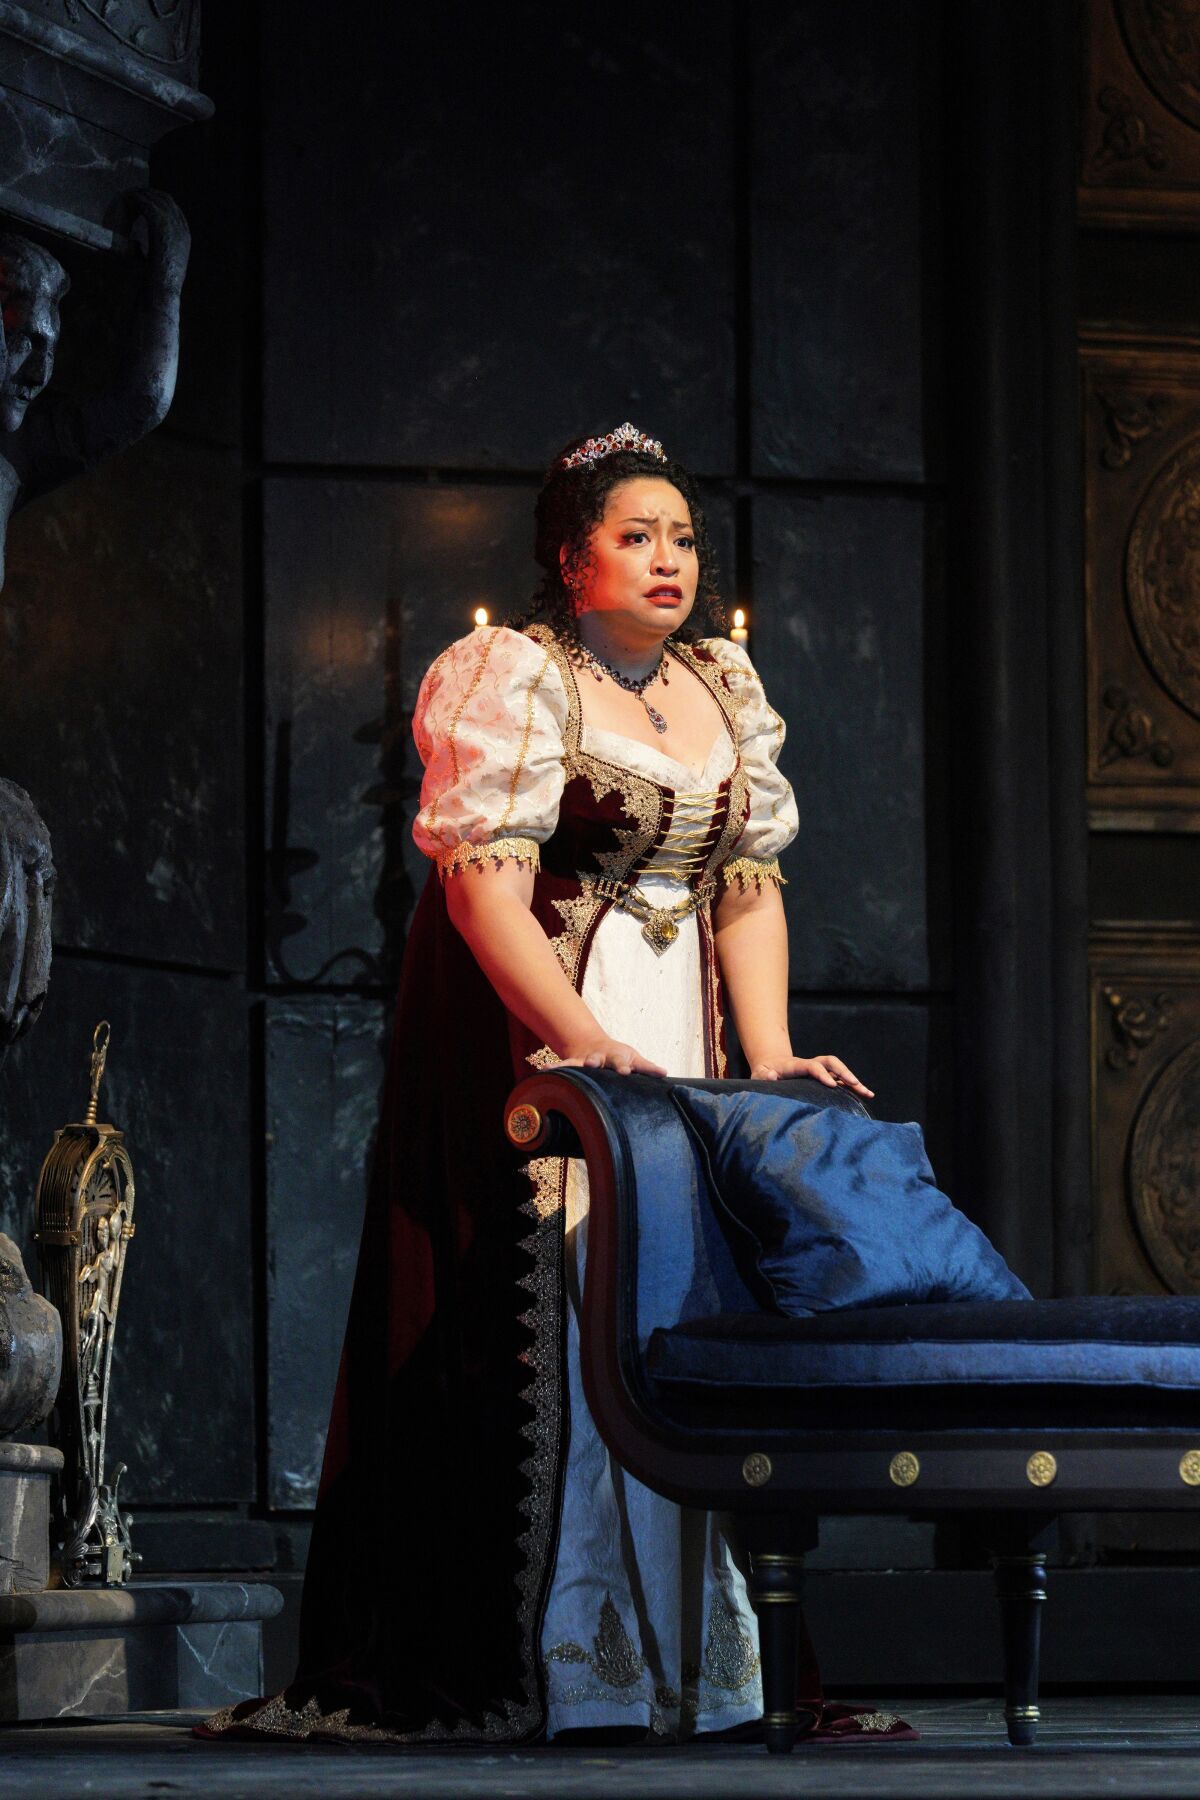 Soprano Michelle Bradley in the opera "Tosca."